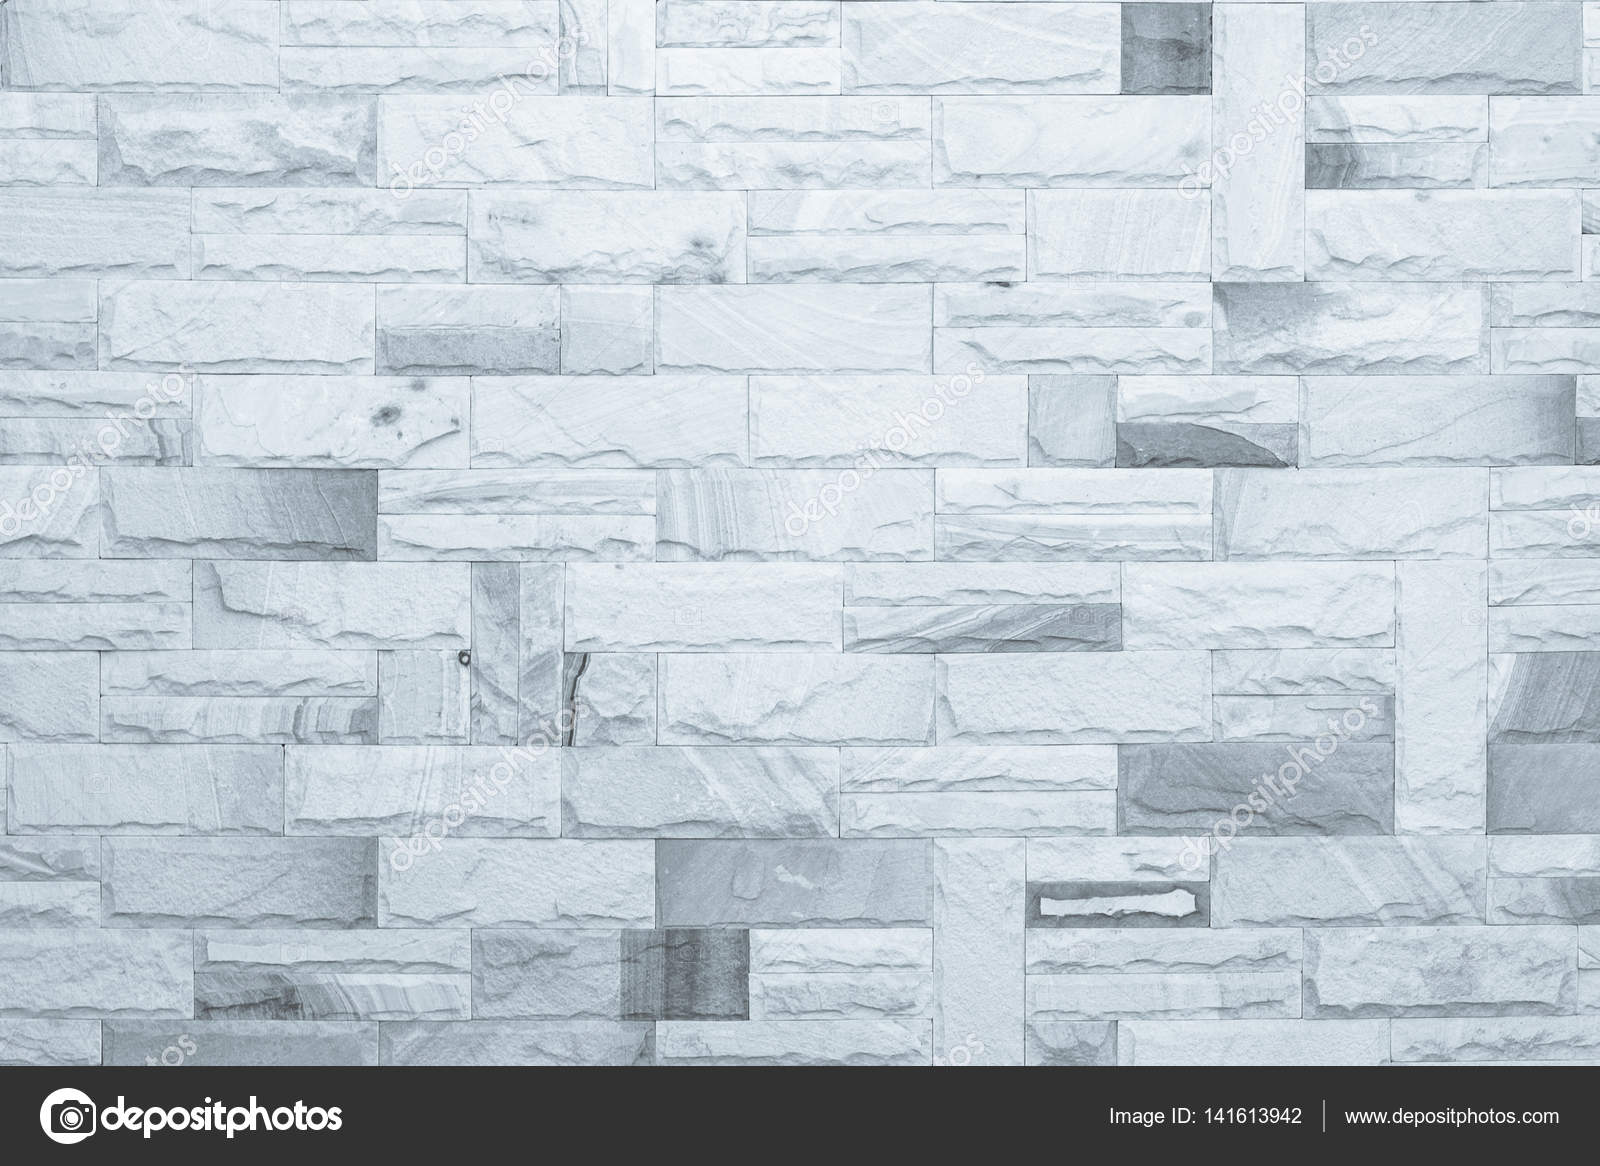 黒と白のレンガの壁のテクスチャ背景 抽象的な風化テクスチャ古い漆喰ライトグレーを染色し 農村の部屋 石積み技術色の水平アーキテクチャの壁紙の汚いさびたブロック塗料白レンガ壁背景を高齢者 ストック写真 C Phokin2516 Gmail Com